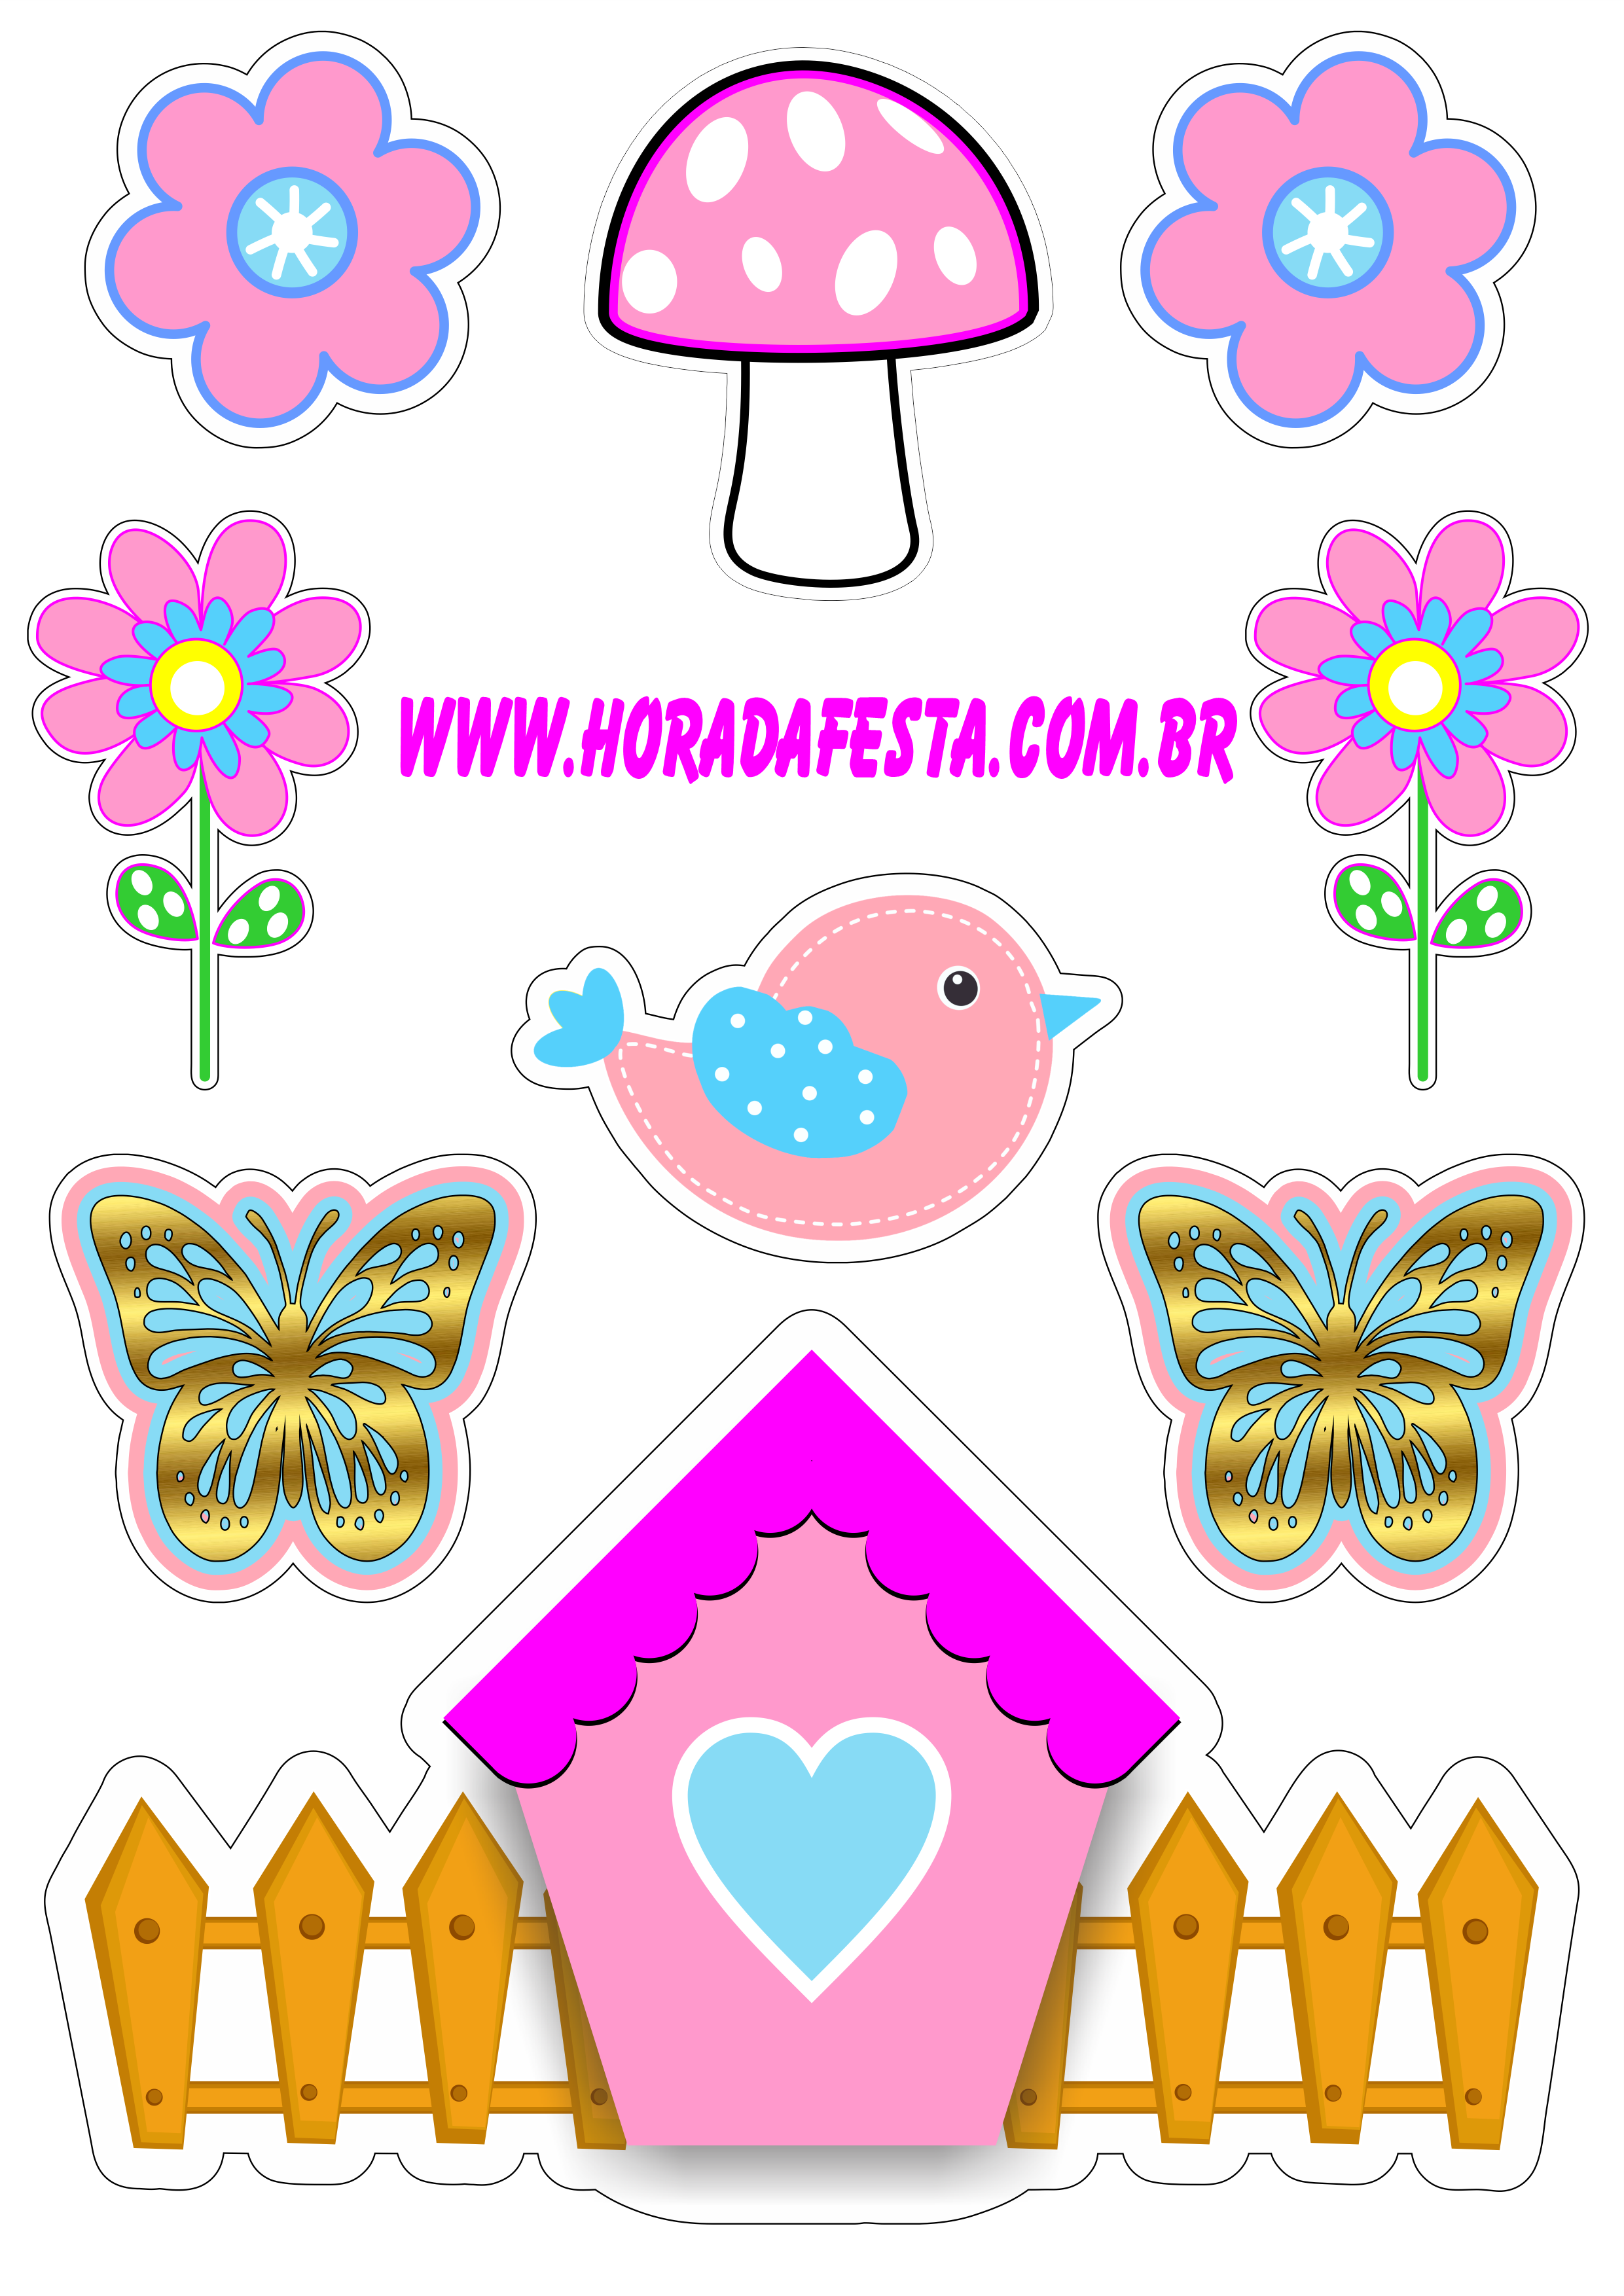 Topo de bolo para imprimir jardim encantado colorido rosa com azul passarinho borboleta florzinha casinha cogumelo png